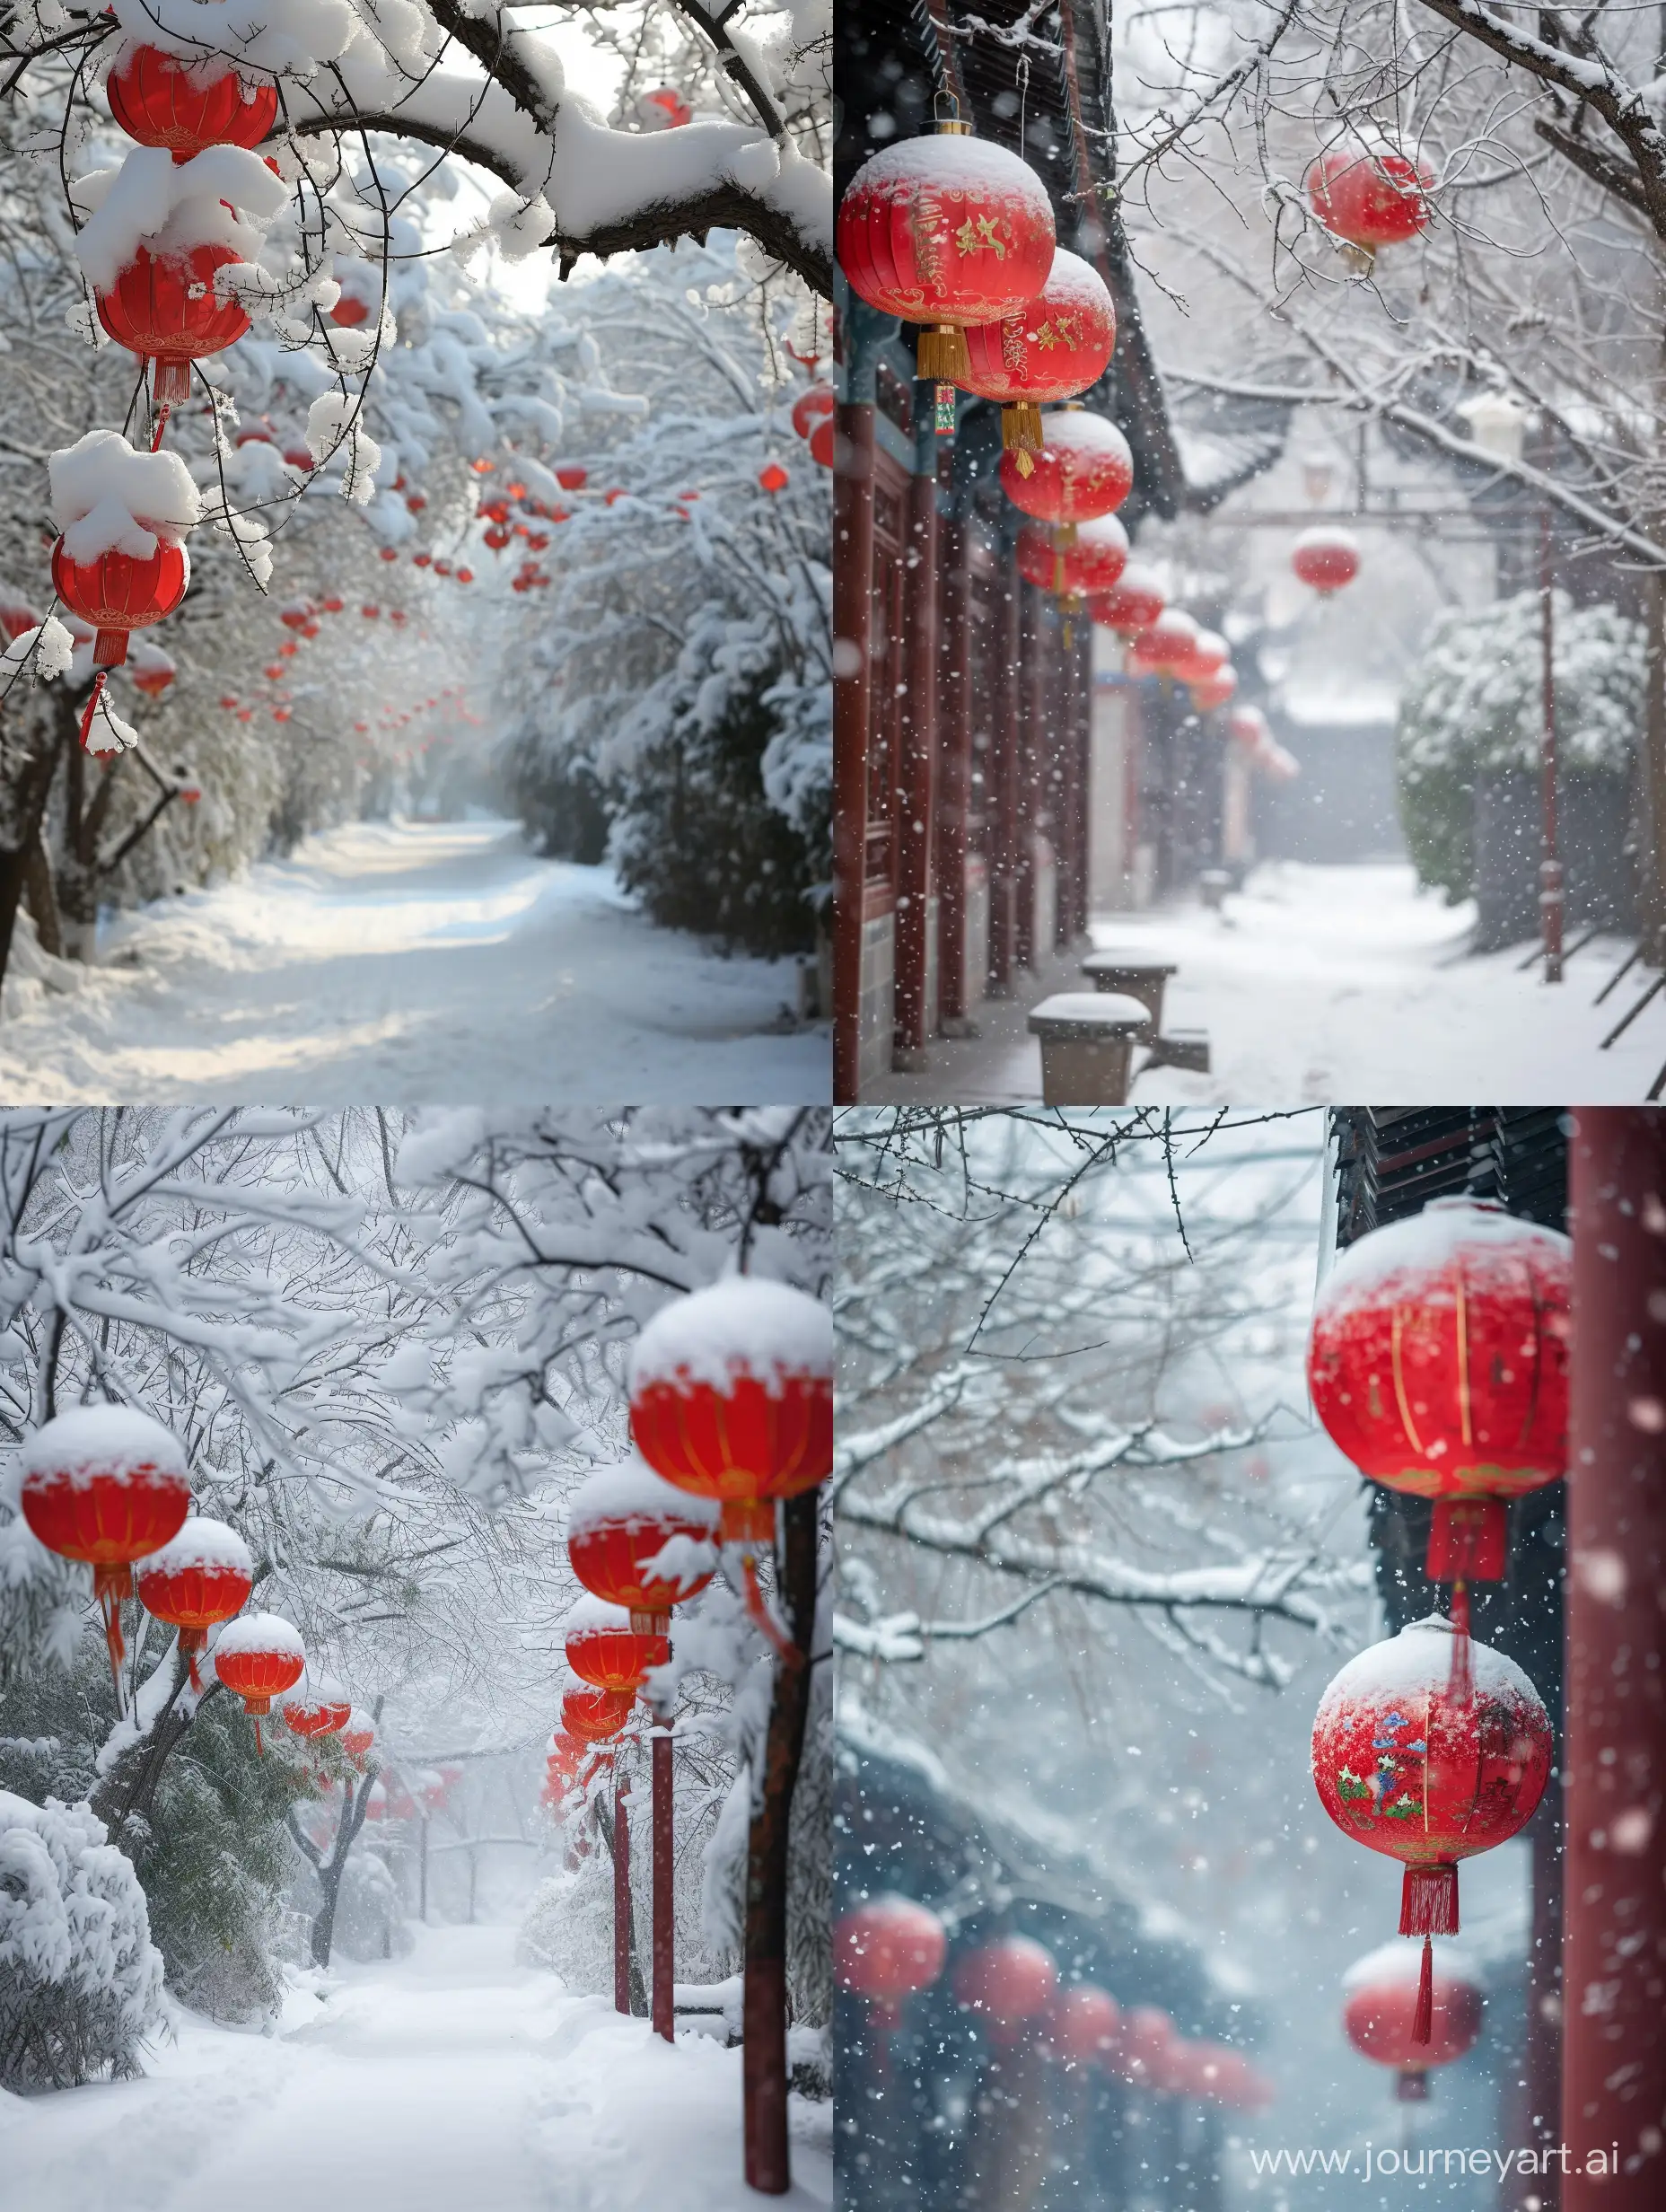 Joyous-Chinese-New-Year-Celebration-in-Winter-Wonderland